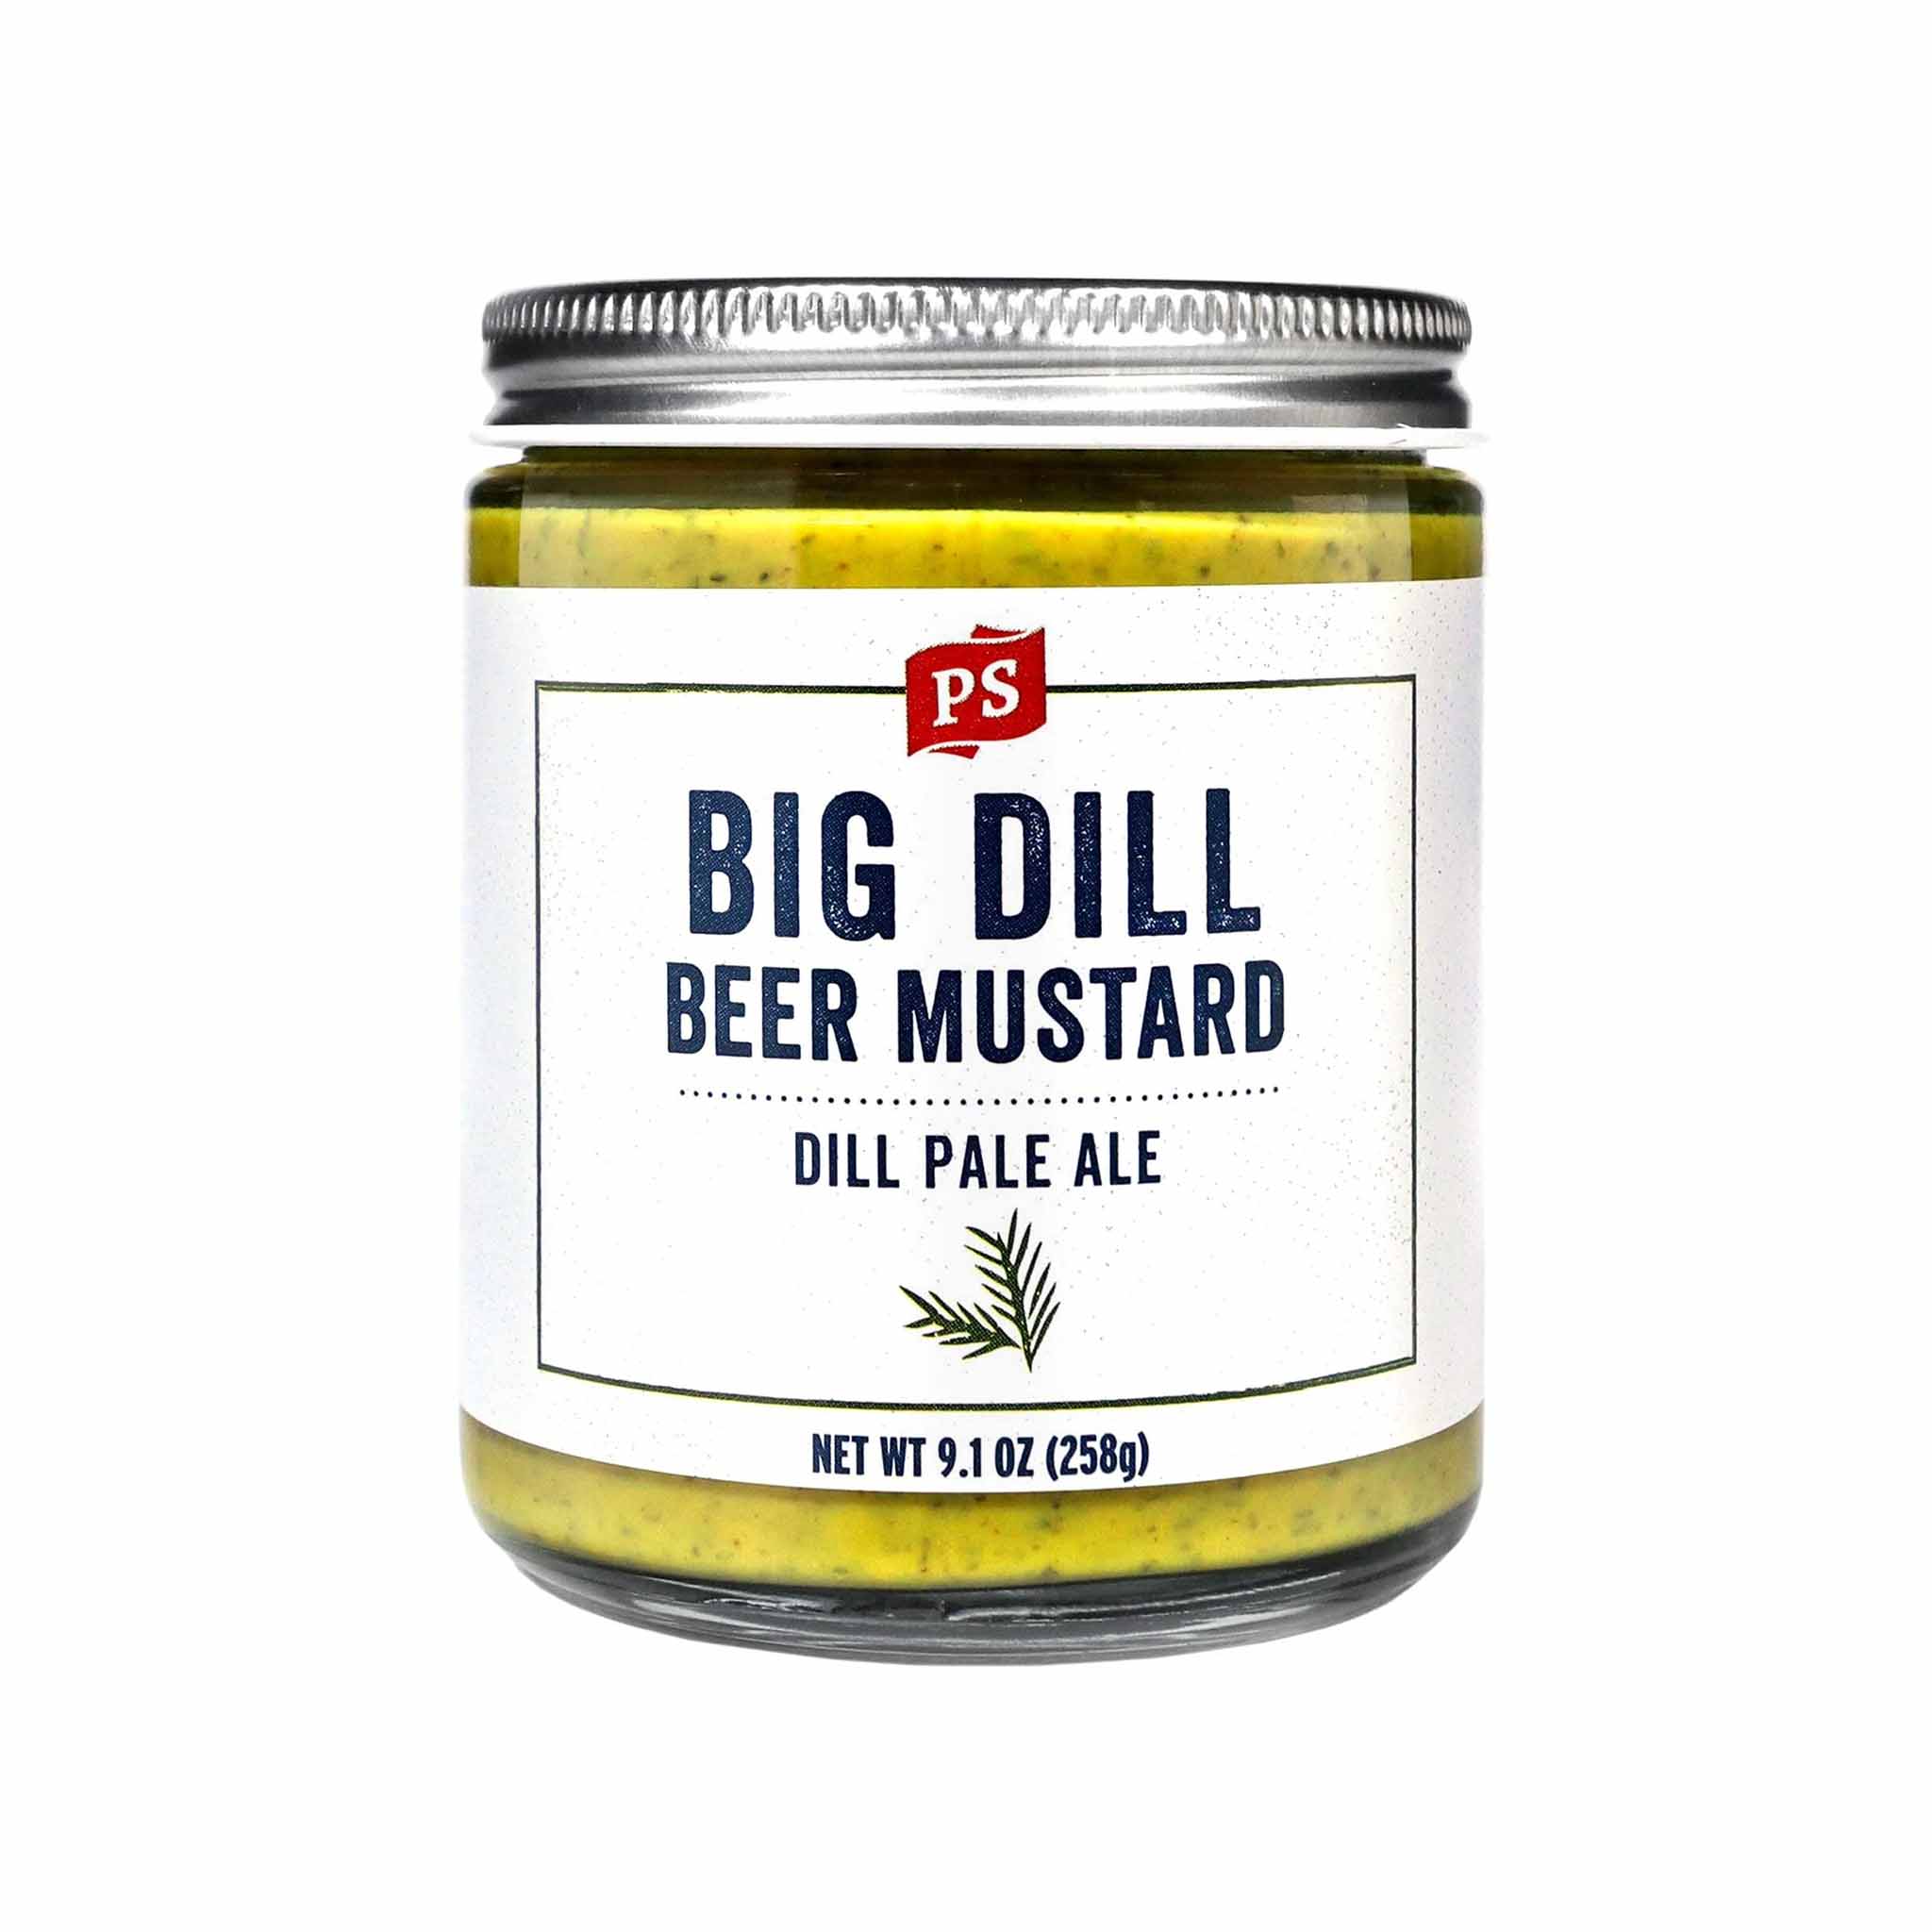 PS Big Dill Beer Mustard